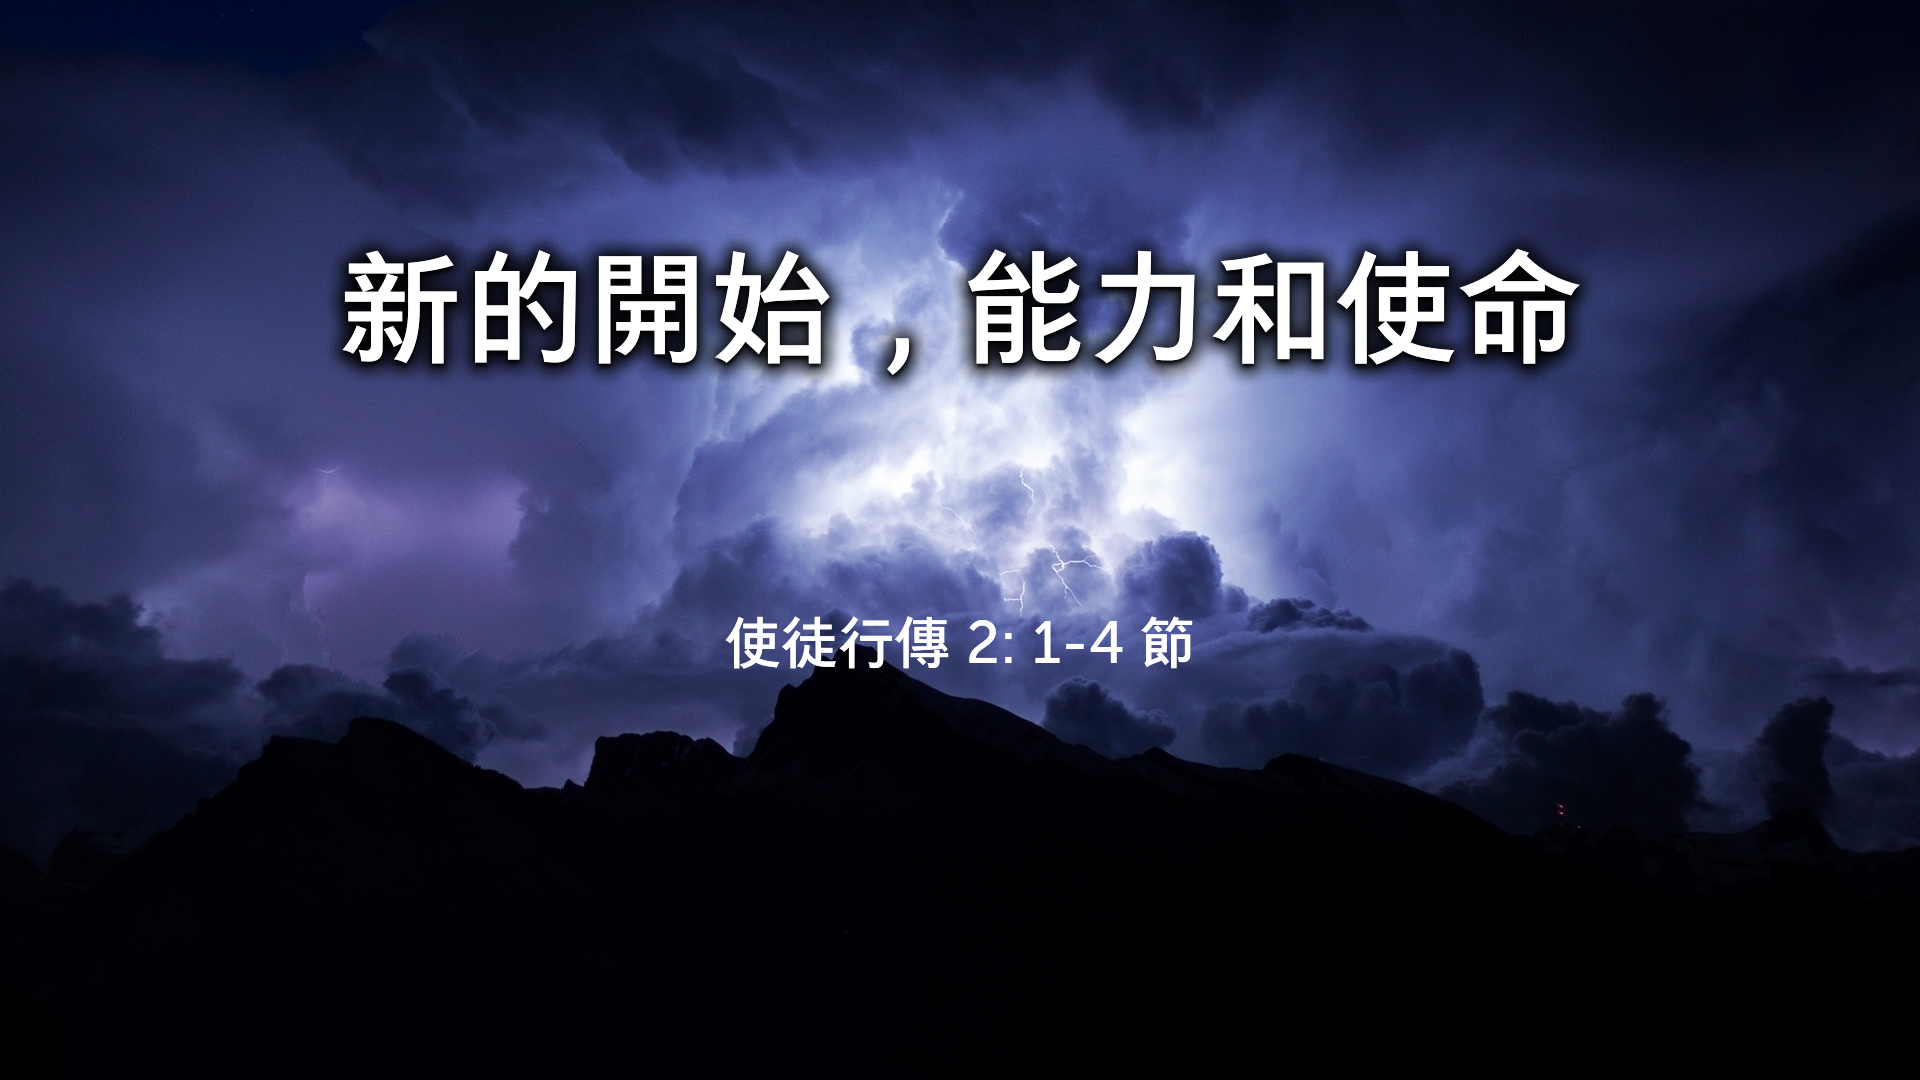 2022年7月31日 - 講道錄像 信息: 新的開始，能力和使命    經文: 使徒行傳 2: 1-4 節   講員: 鄧廣華牧師